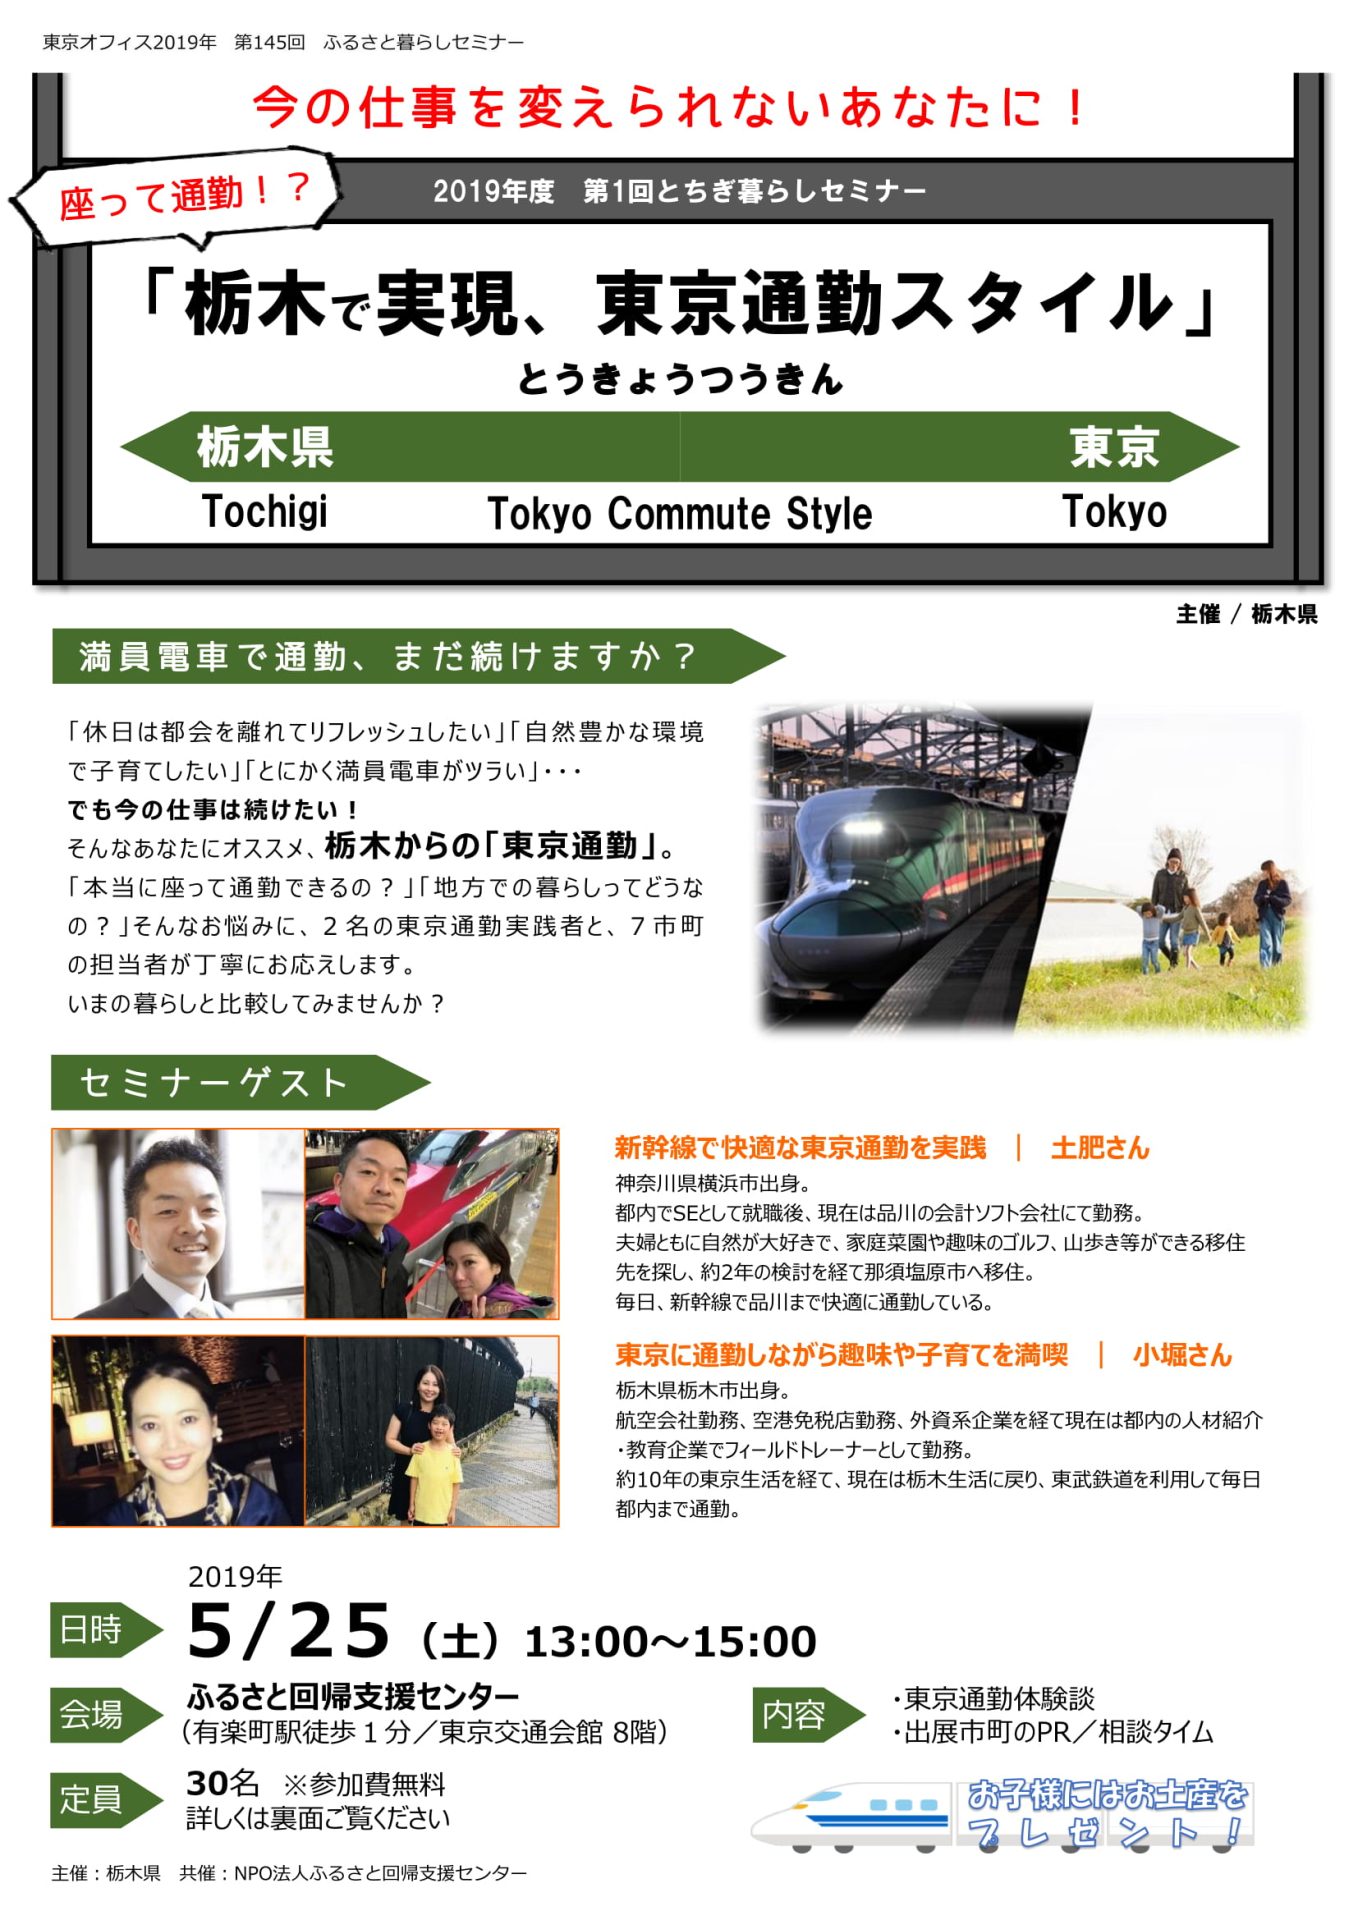 座って通勤!?栃木で実現、東京通勤スタイル | 移住関連イベント情報